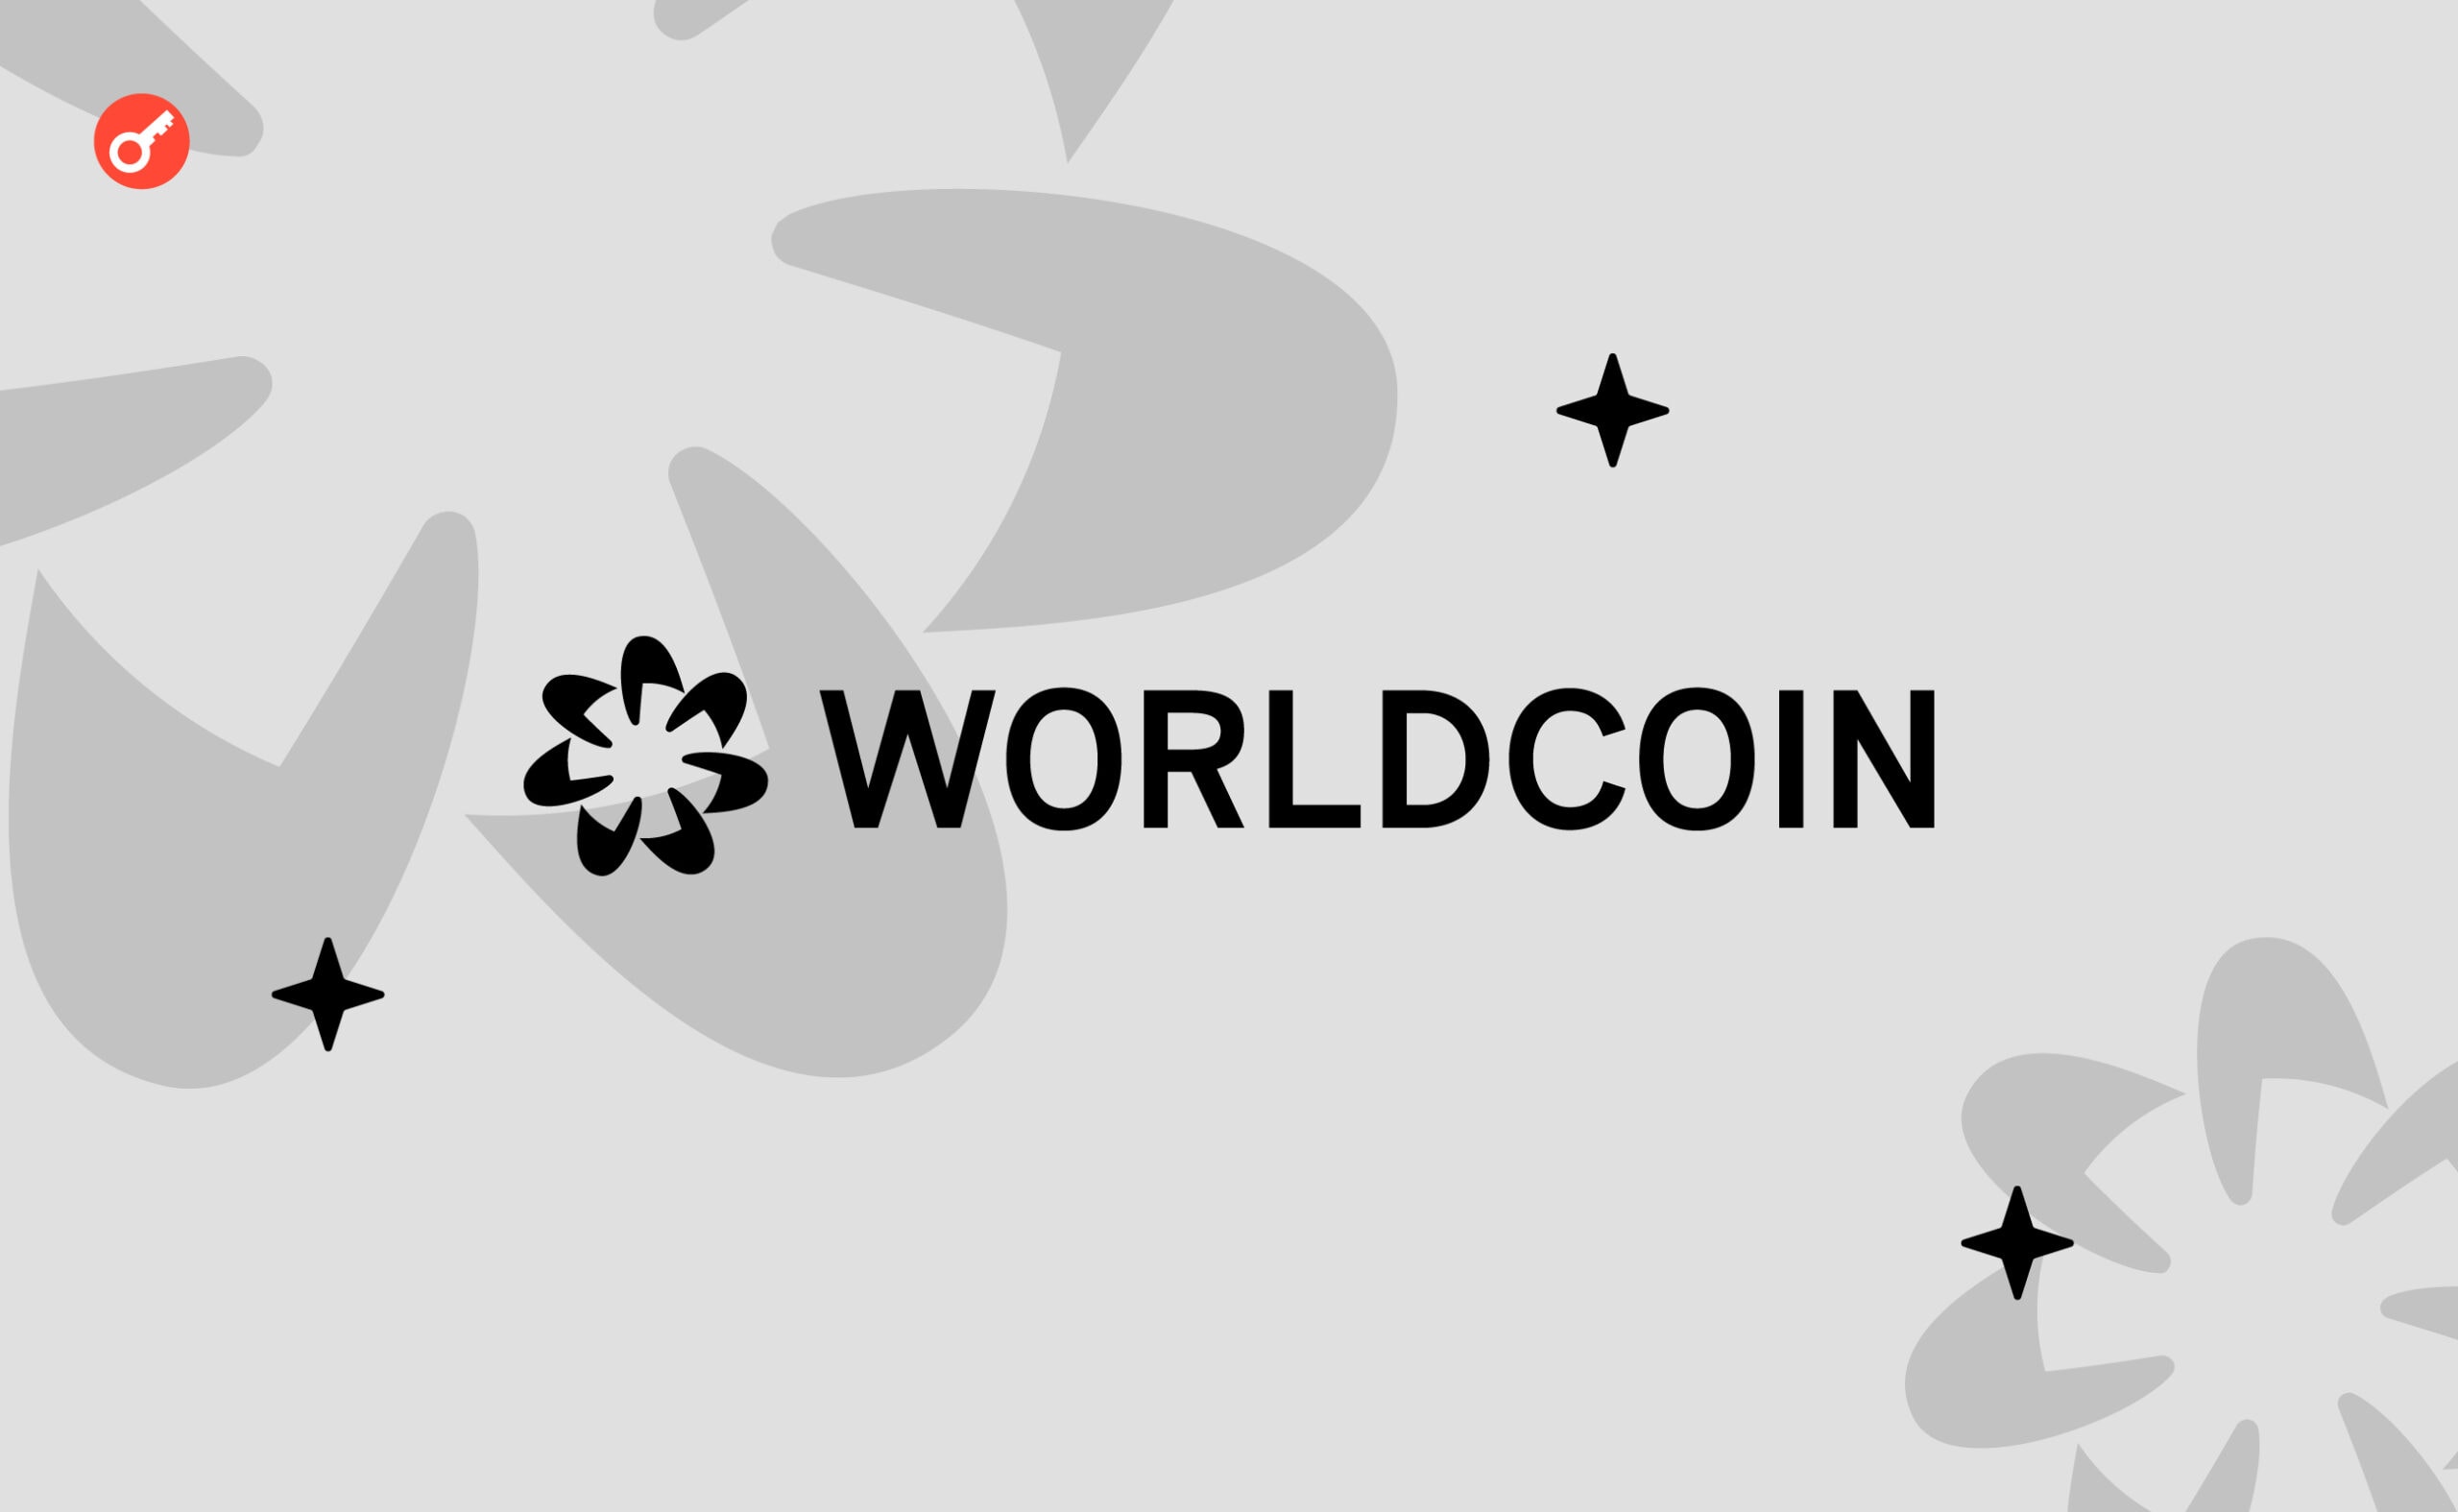 Worldcoin залучить ще $100 млн, зокрема від нових інвесторів. Головний колаж новини.